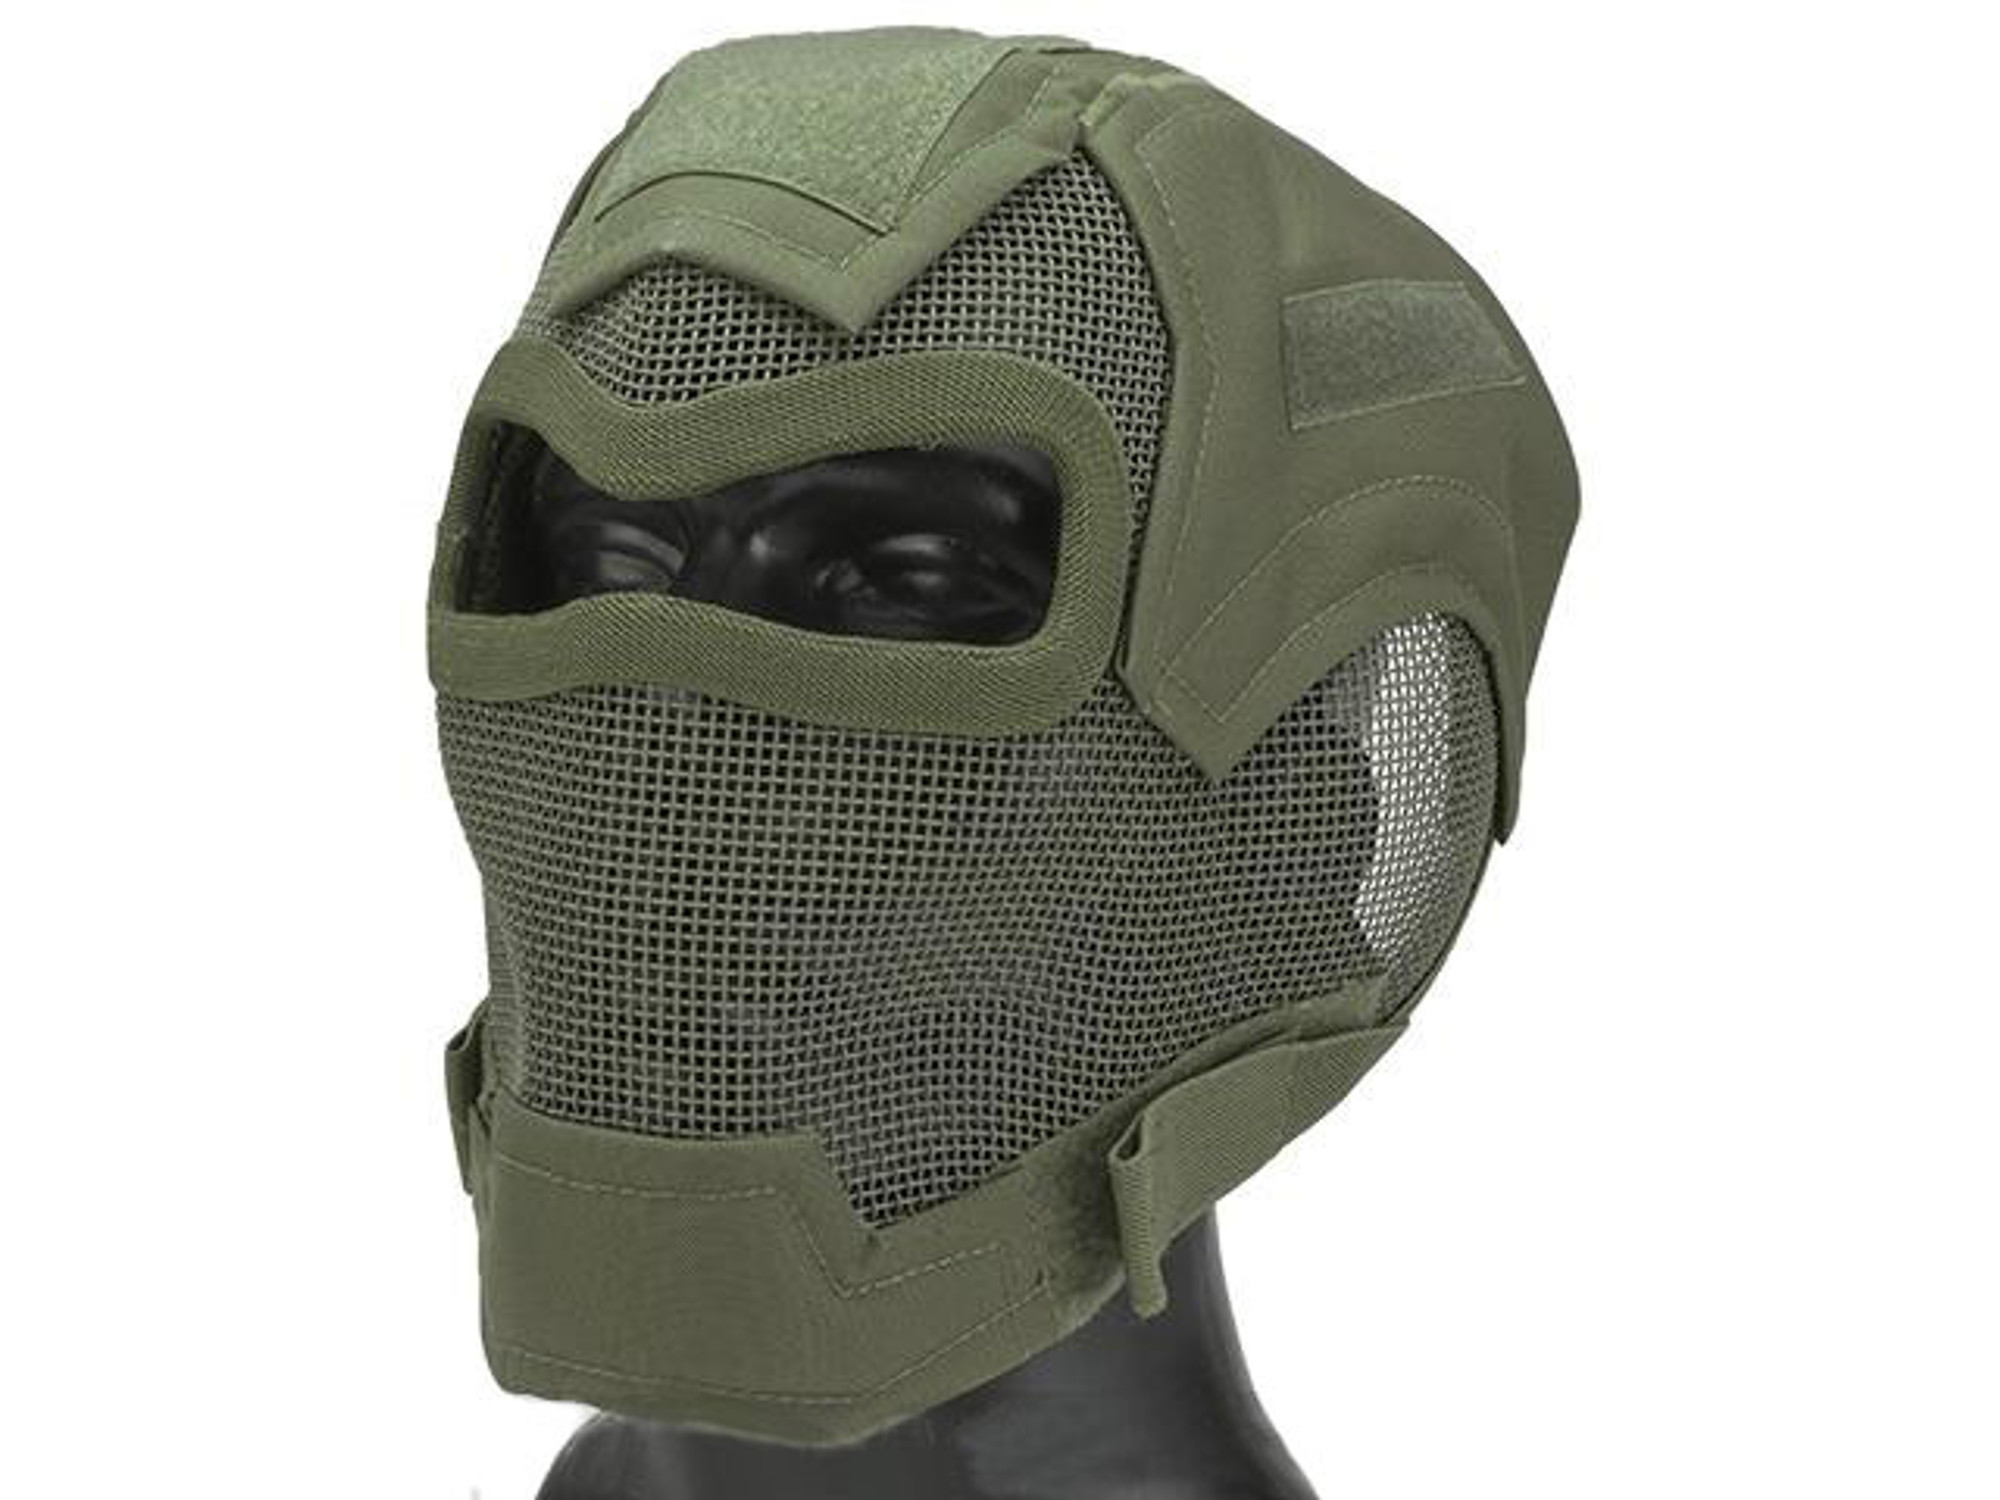 Matrix Iron Face Carbon Steel "Watcher" Gen7 Full Face Mask - OD Green